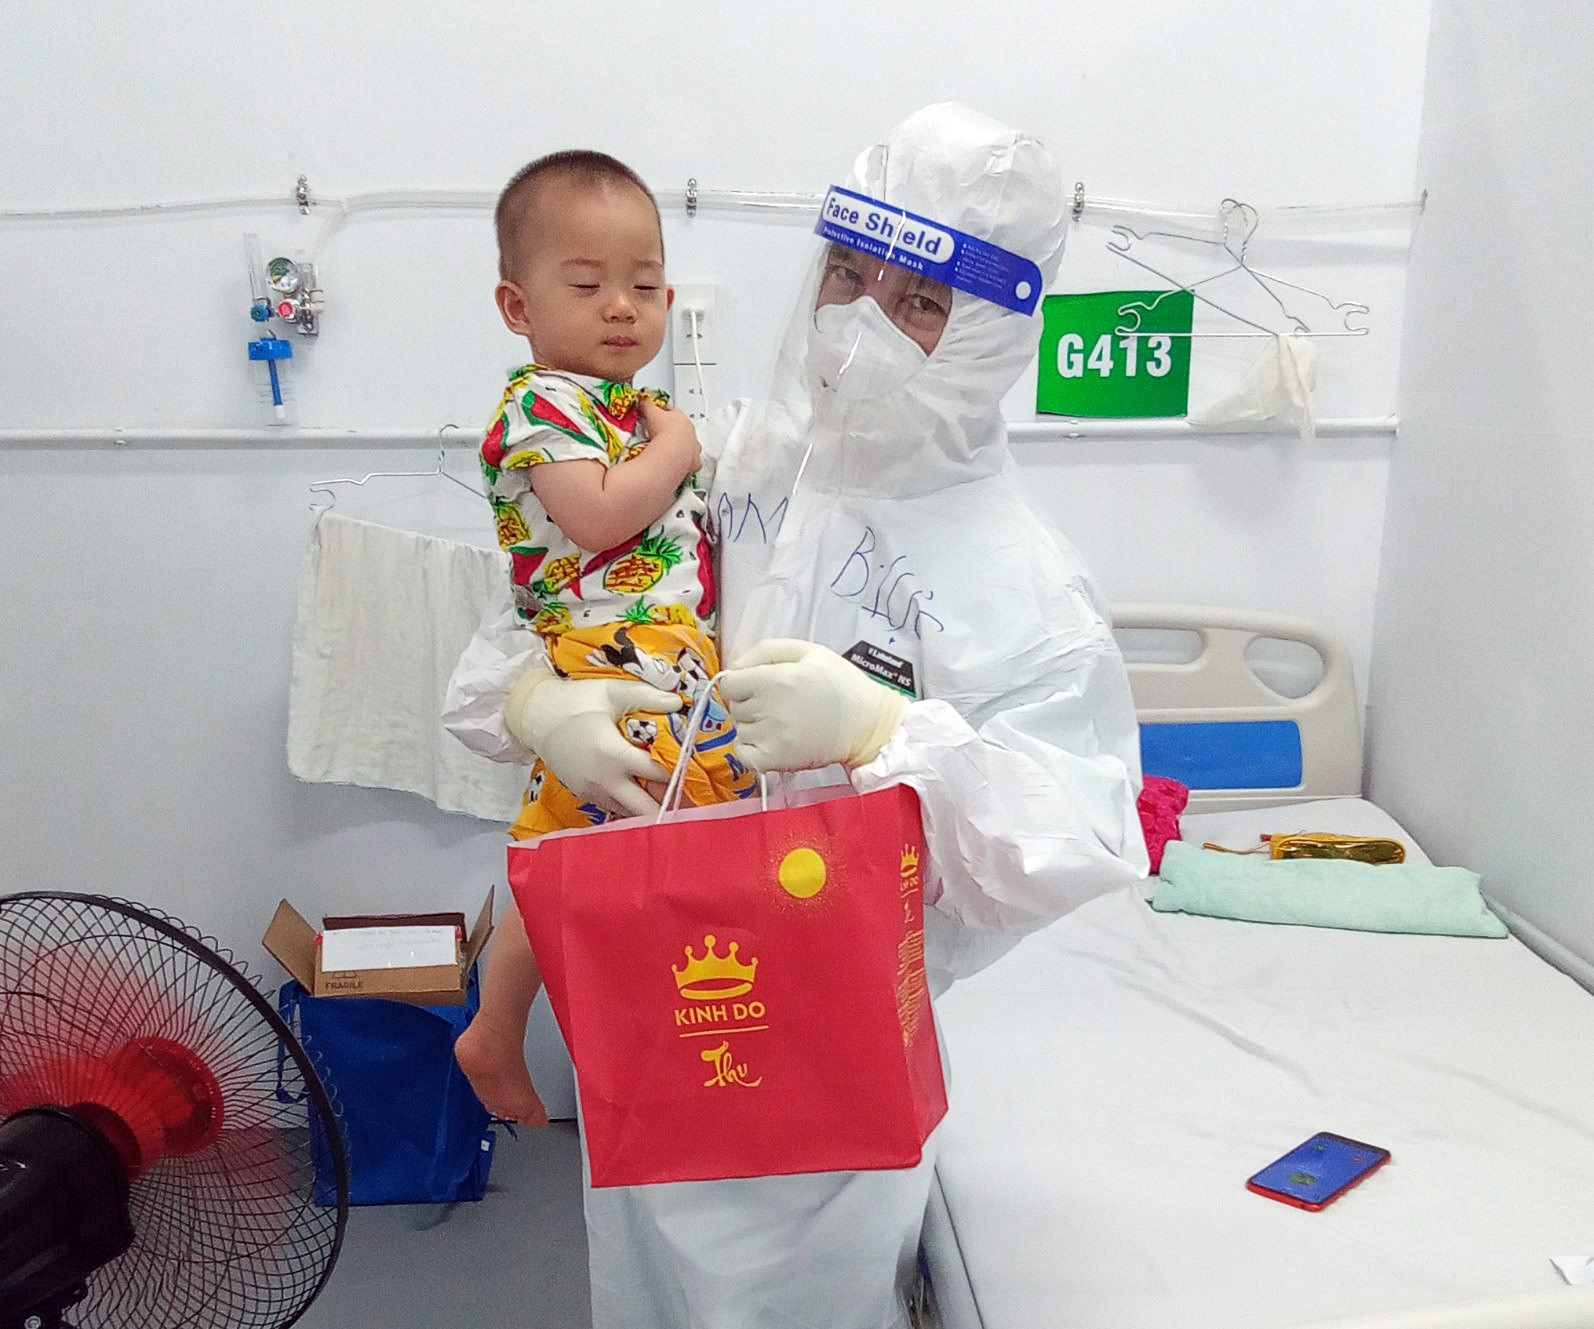 Đoàn Công tác Bệnh viện Đa khoa Trung ương Quảng Nam Tại Trung tâm Hồi sức bệnh nhân Covid-19 quận Tân Phú - TP.HCM